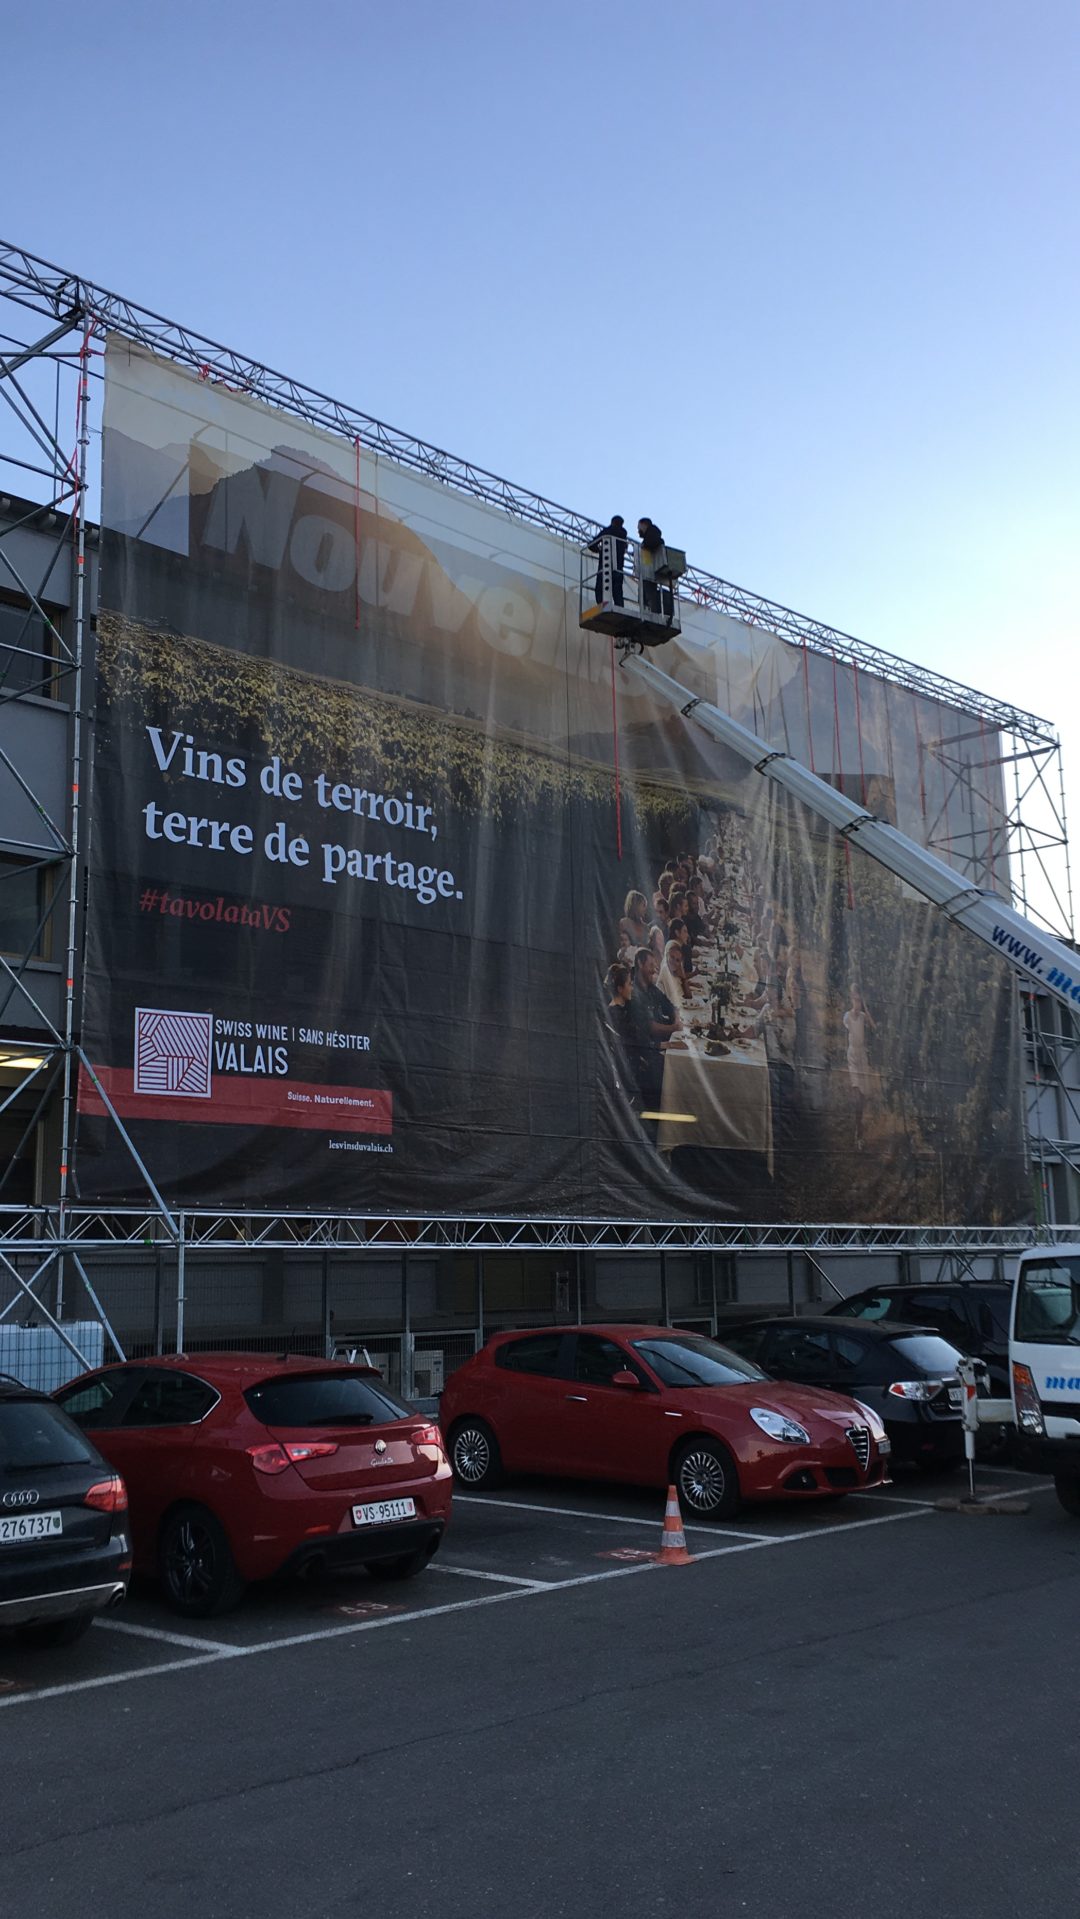 Structure pour publicité géante pour l’IVV à la Gare de Sion 2019